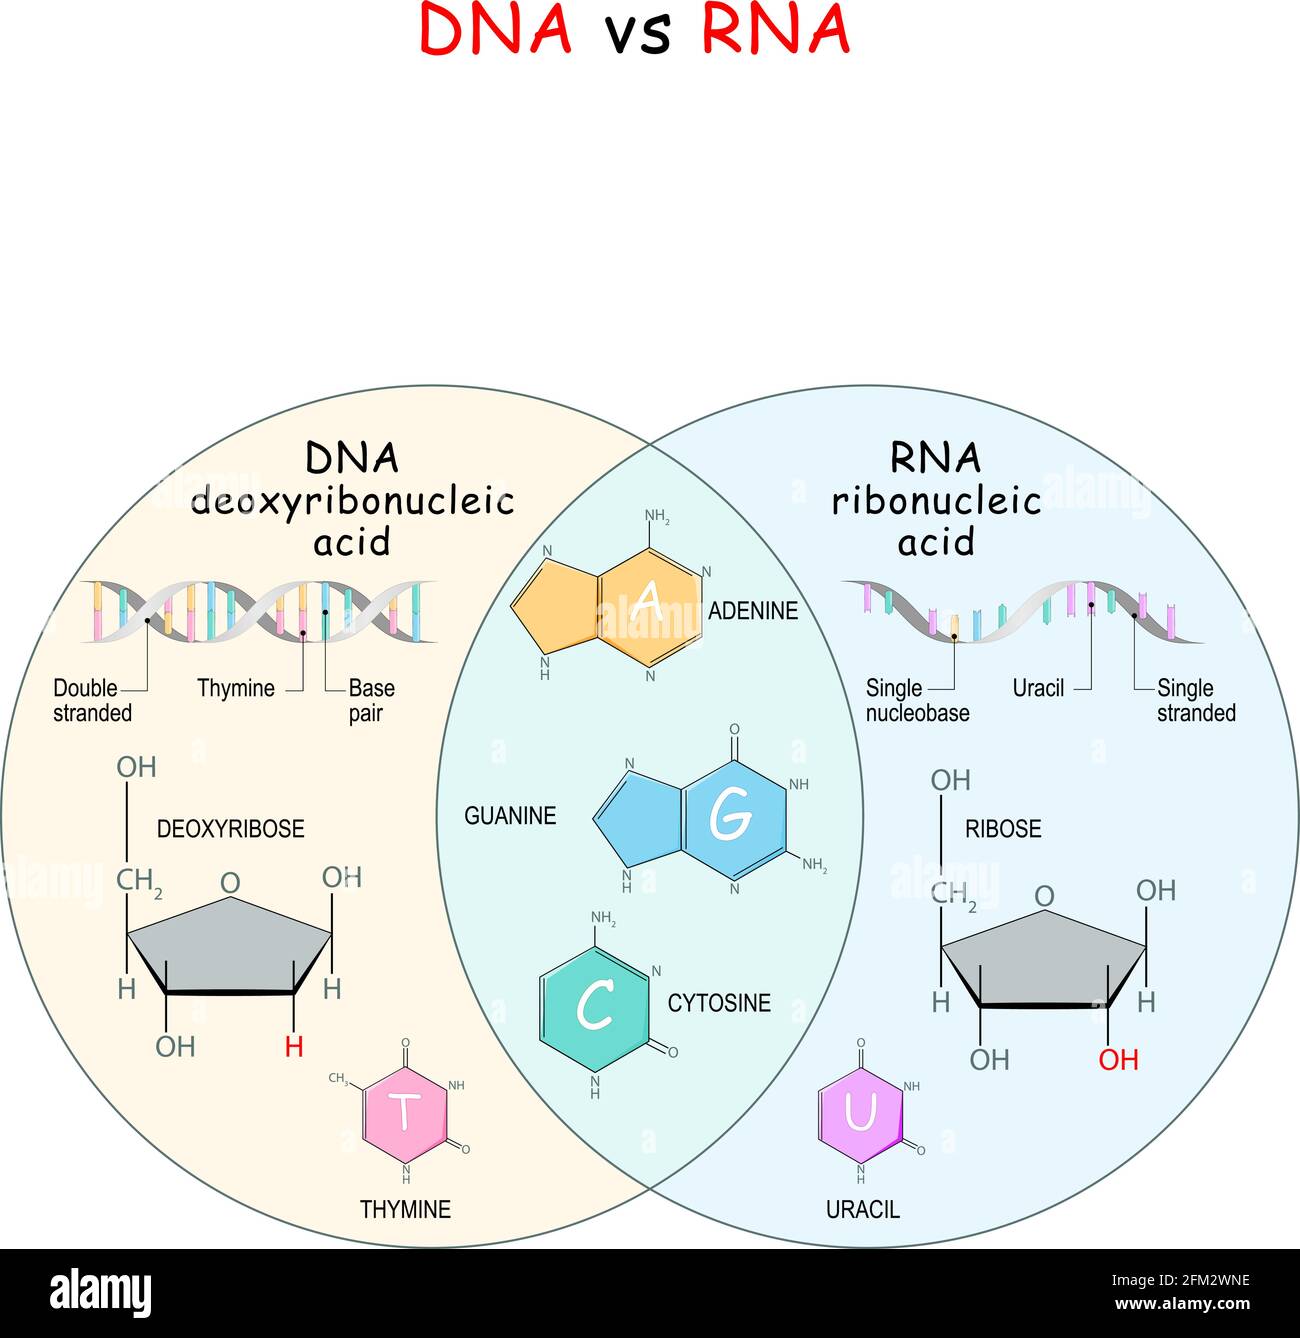 DNA und RNA. Vergleich und Unterschied. Chemische Strukturformel und Modell der Moleküle DNA und RNA. Vektorgrafik Stock Vektor